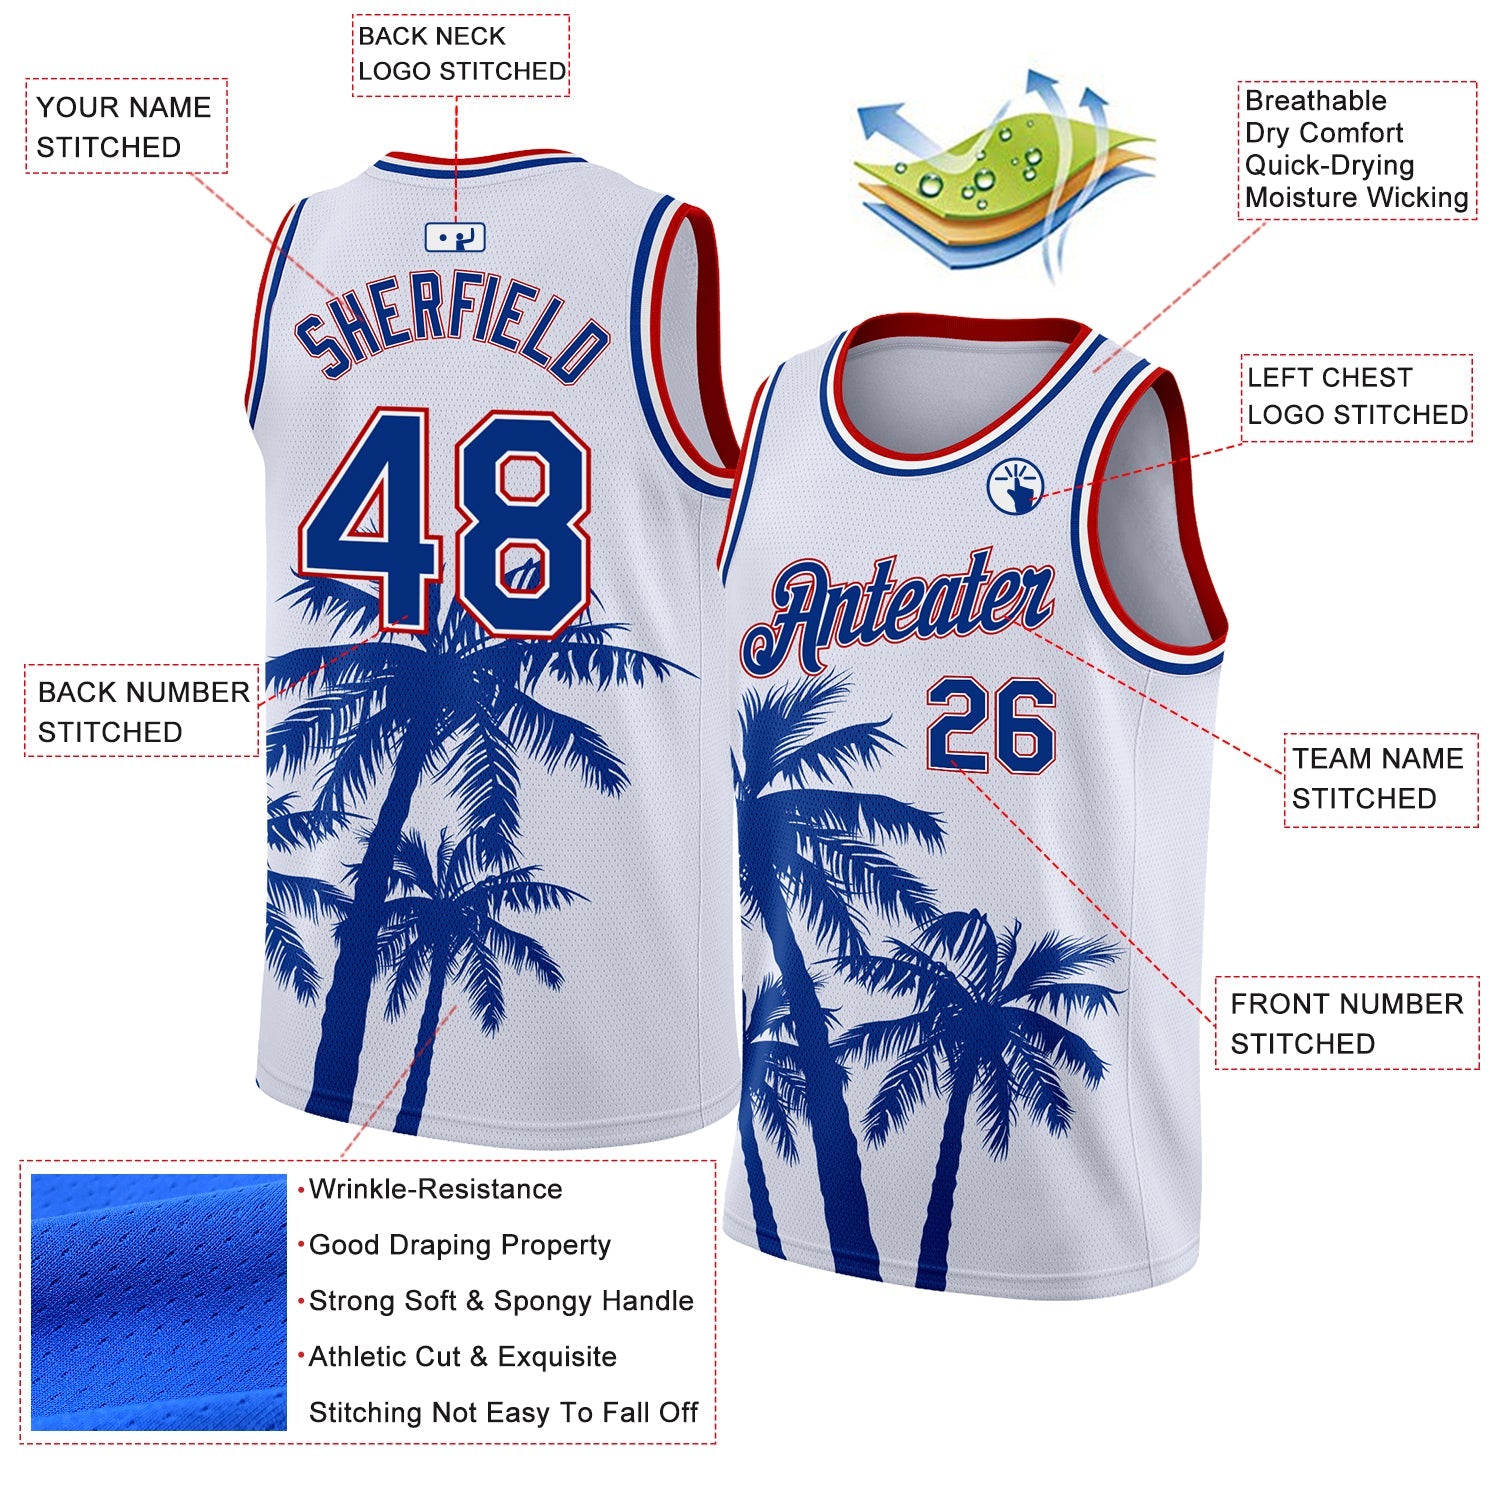 Benutzerdefiniertes, authentisches Basketball-Trikot mit tropischem Hawaii-Kokosnussbaummuster in Weiß und Royal-Rot mit 3D-Muster